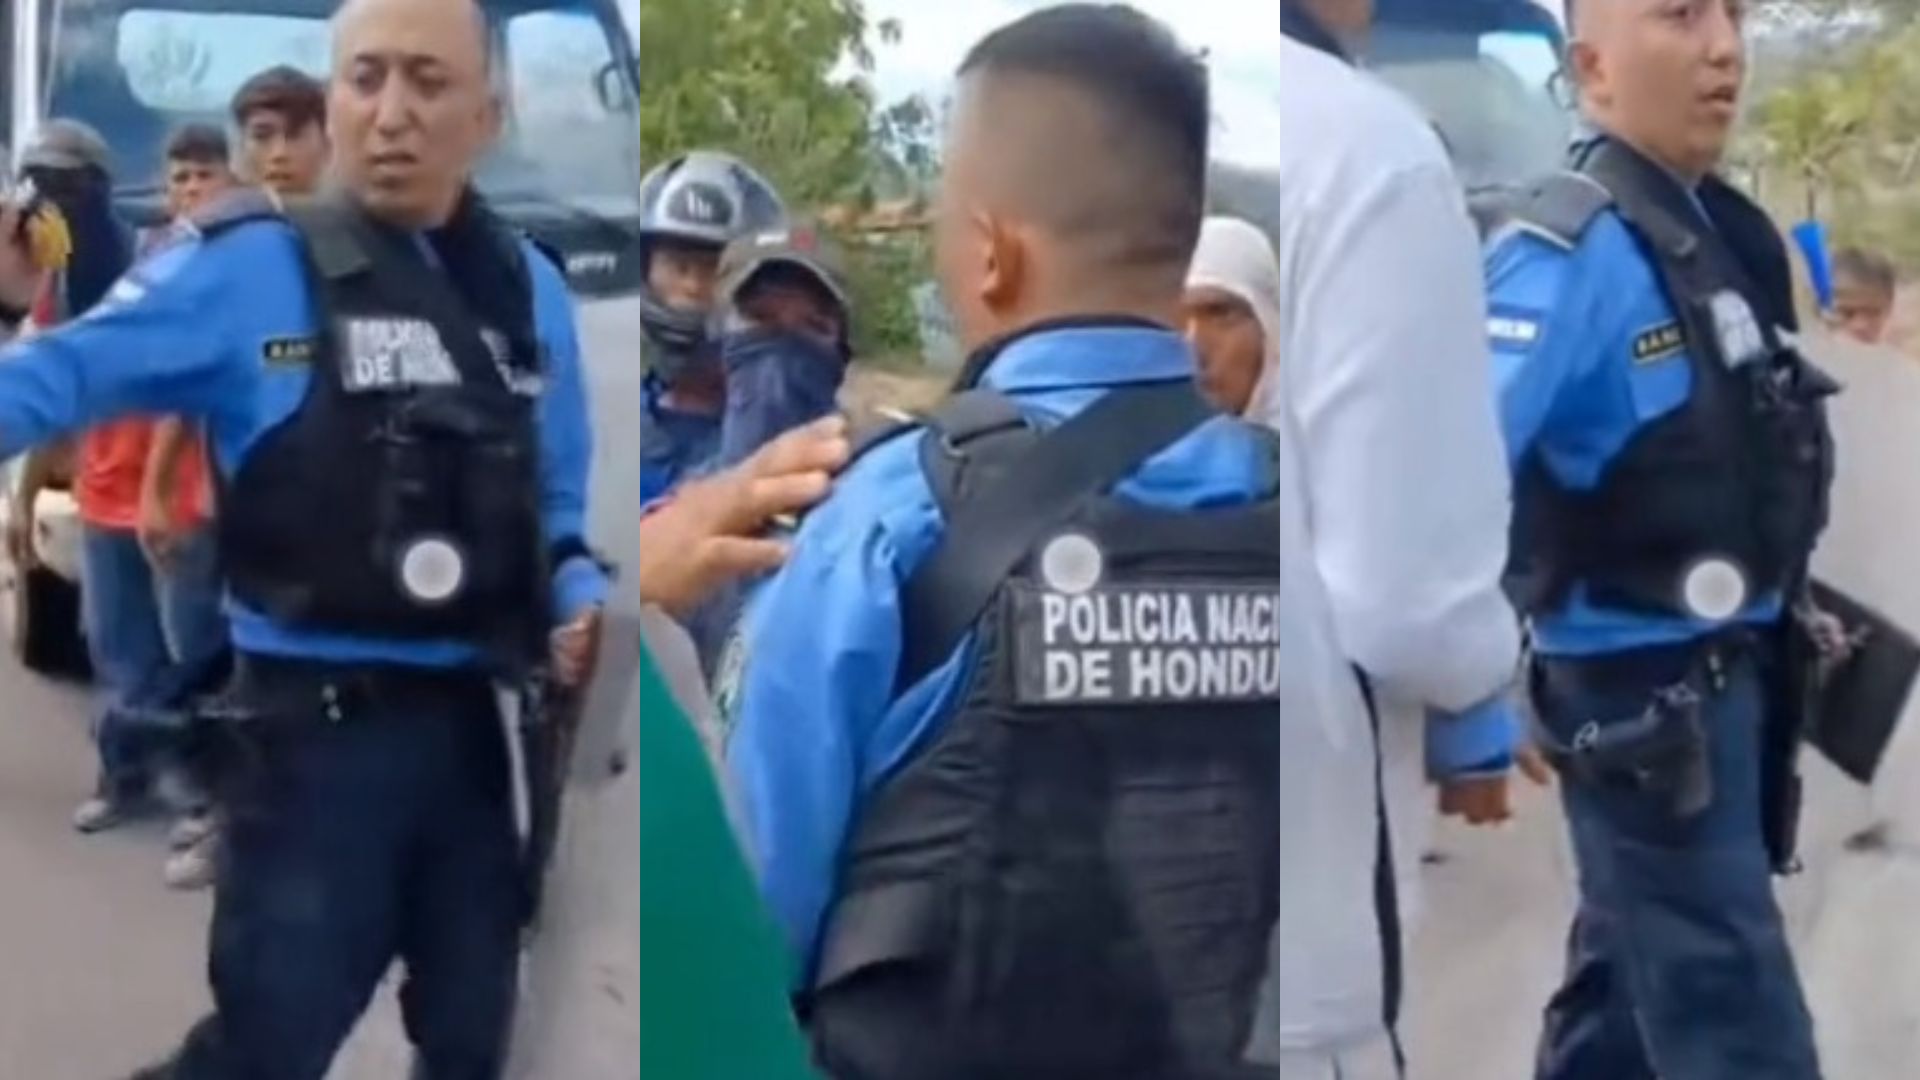 LO DEJARON SOLO | Policías abandonan a uno de sus integrantes en protesta de comerciantes en Choluteca   